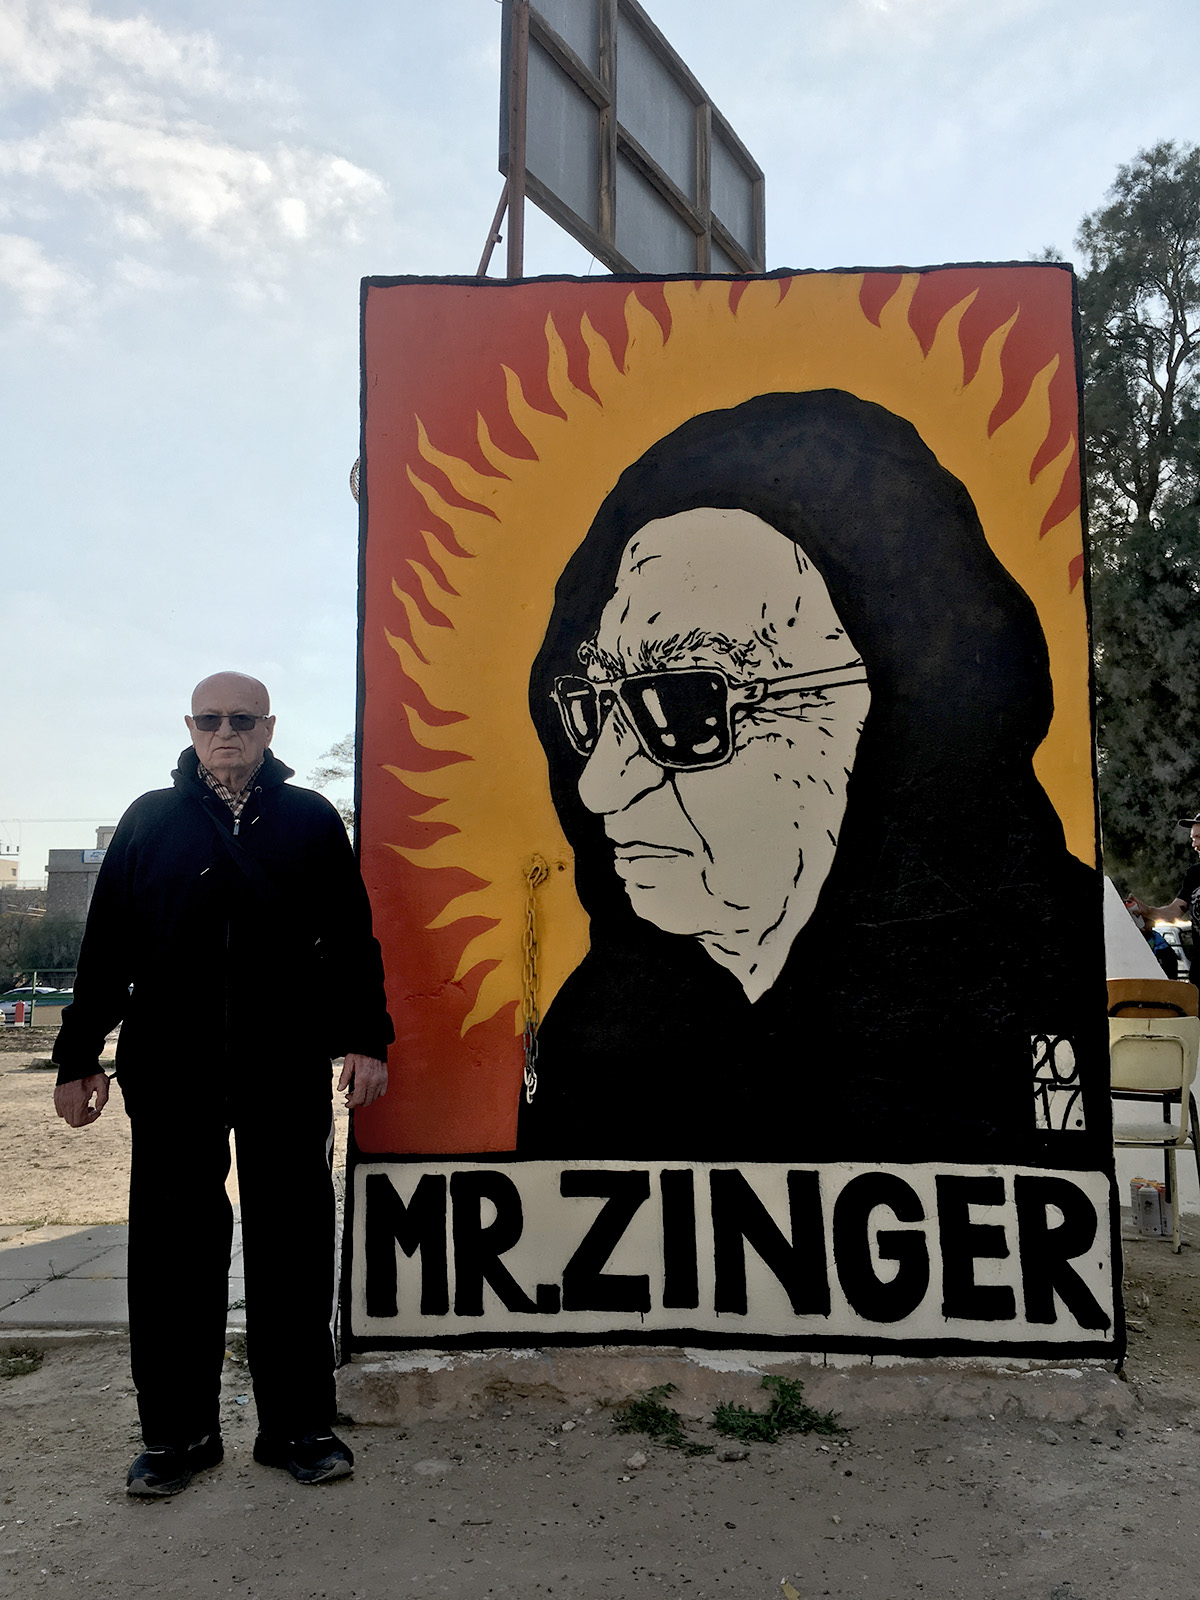 MRZINGER